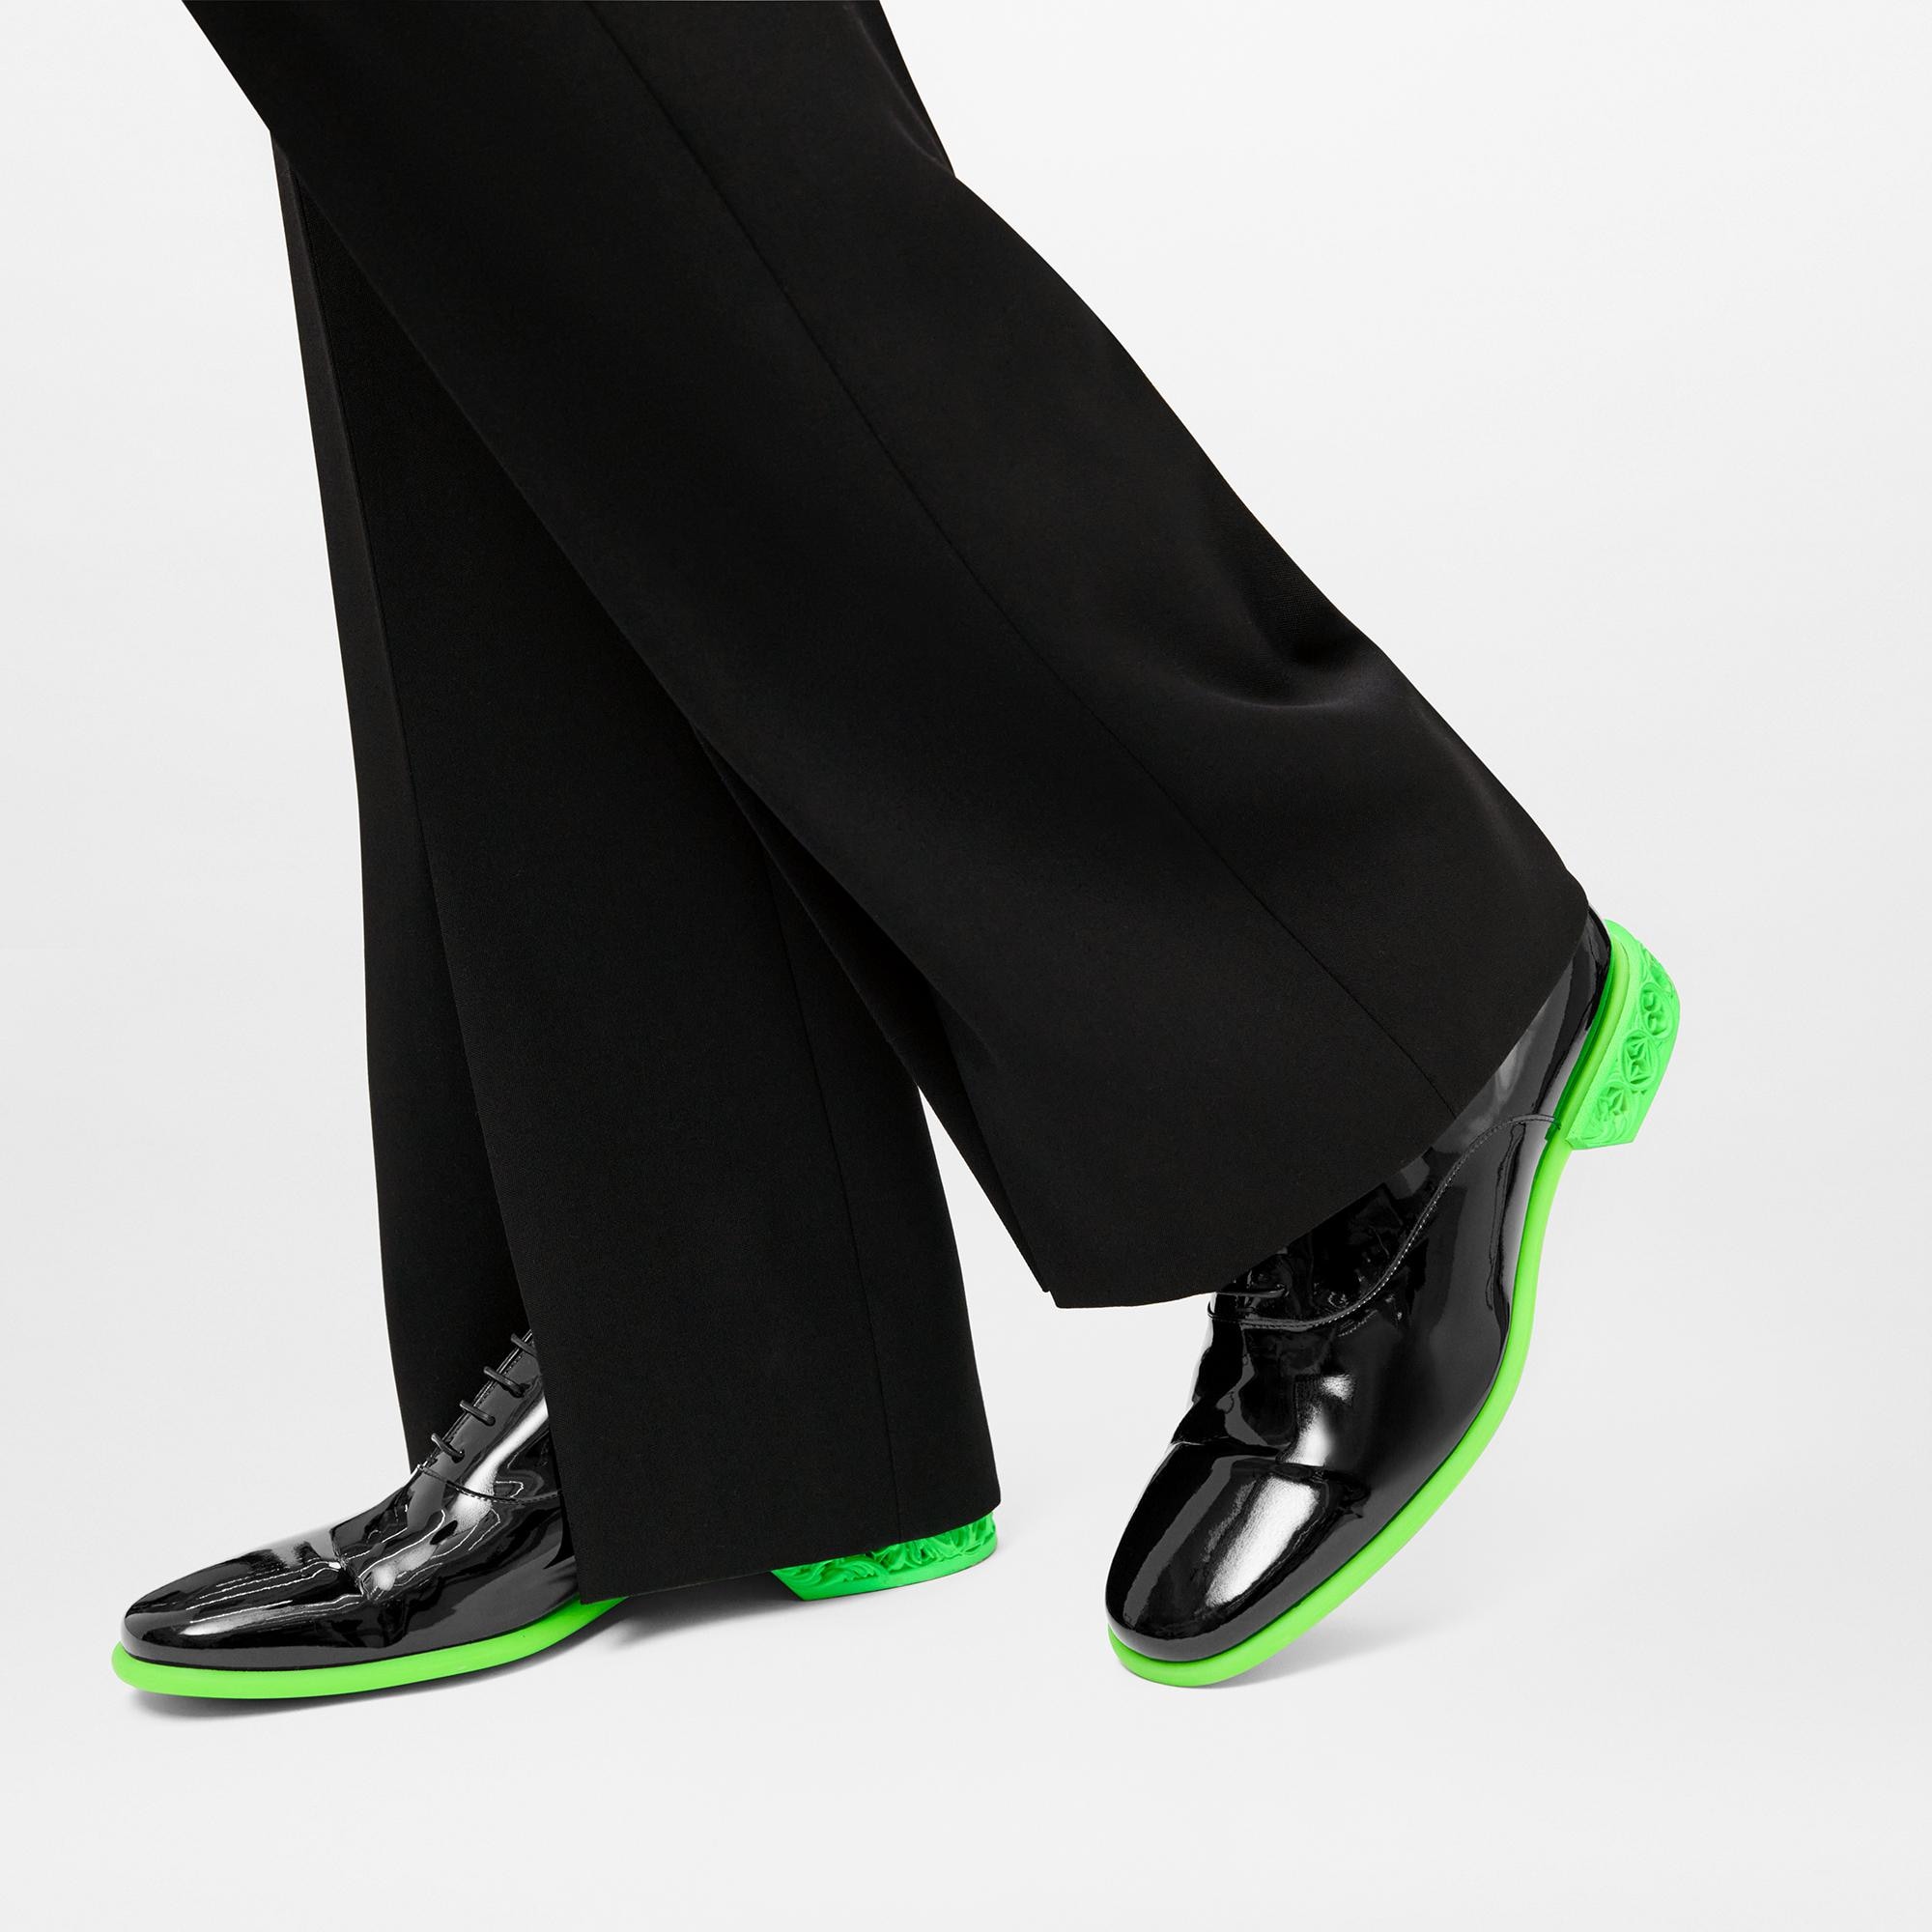 Richelieu LV formal - Hombre - Zapatos